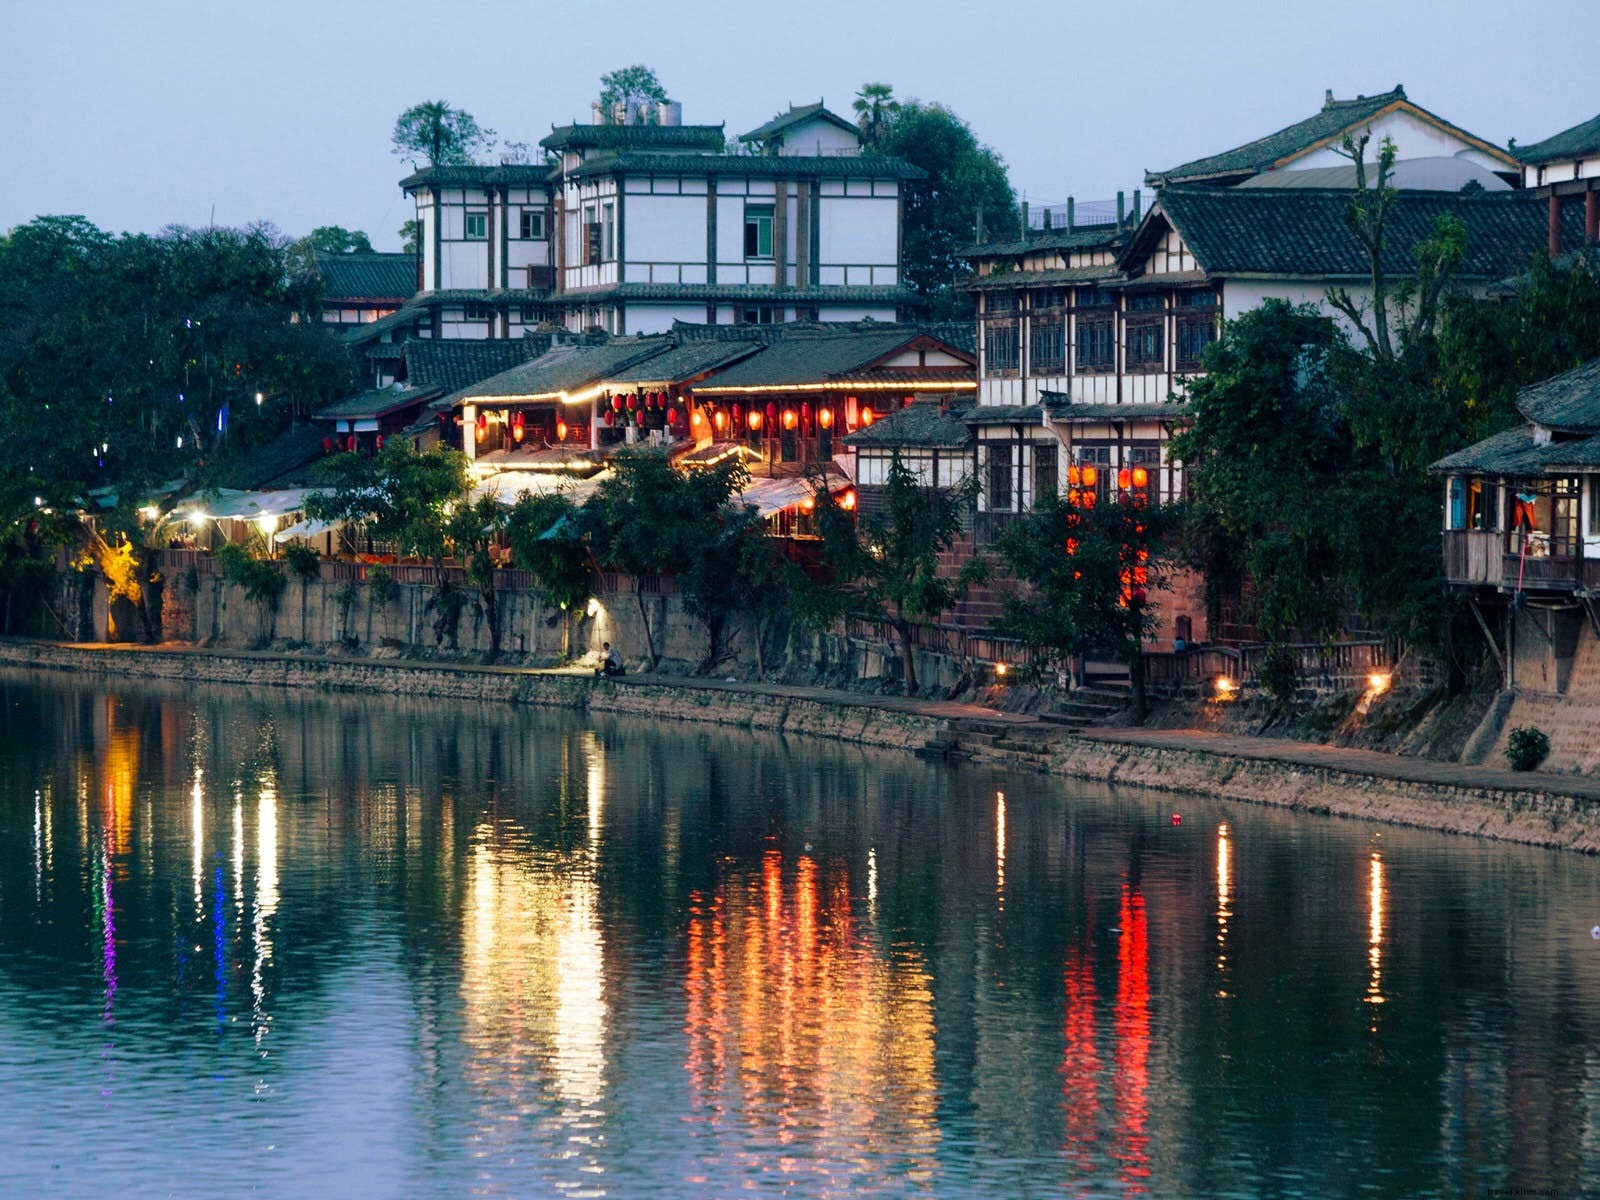 Melambat di kota tua paling menawan di Sichuan 